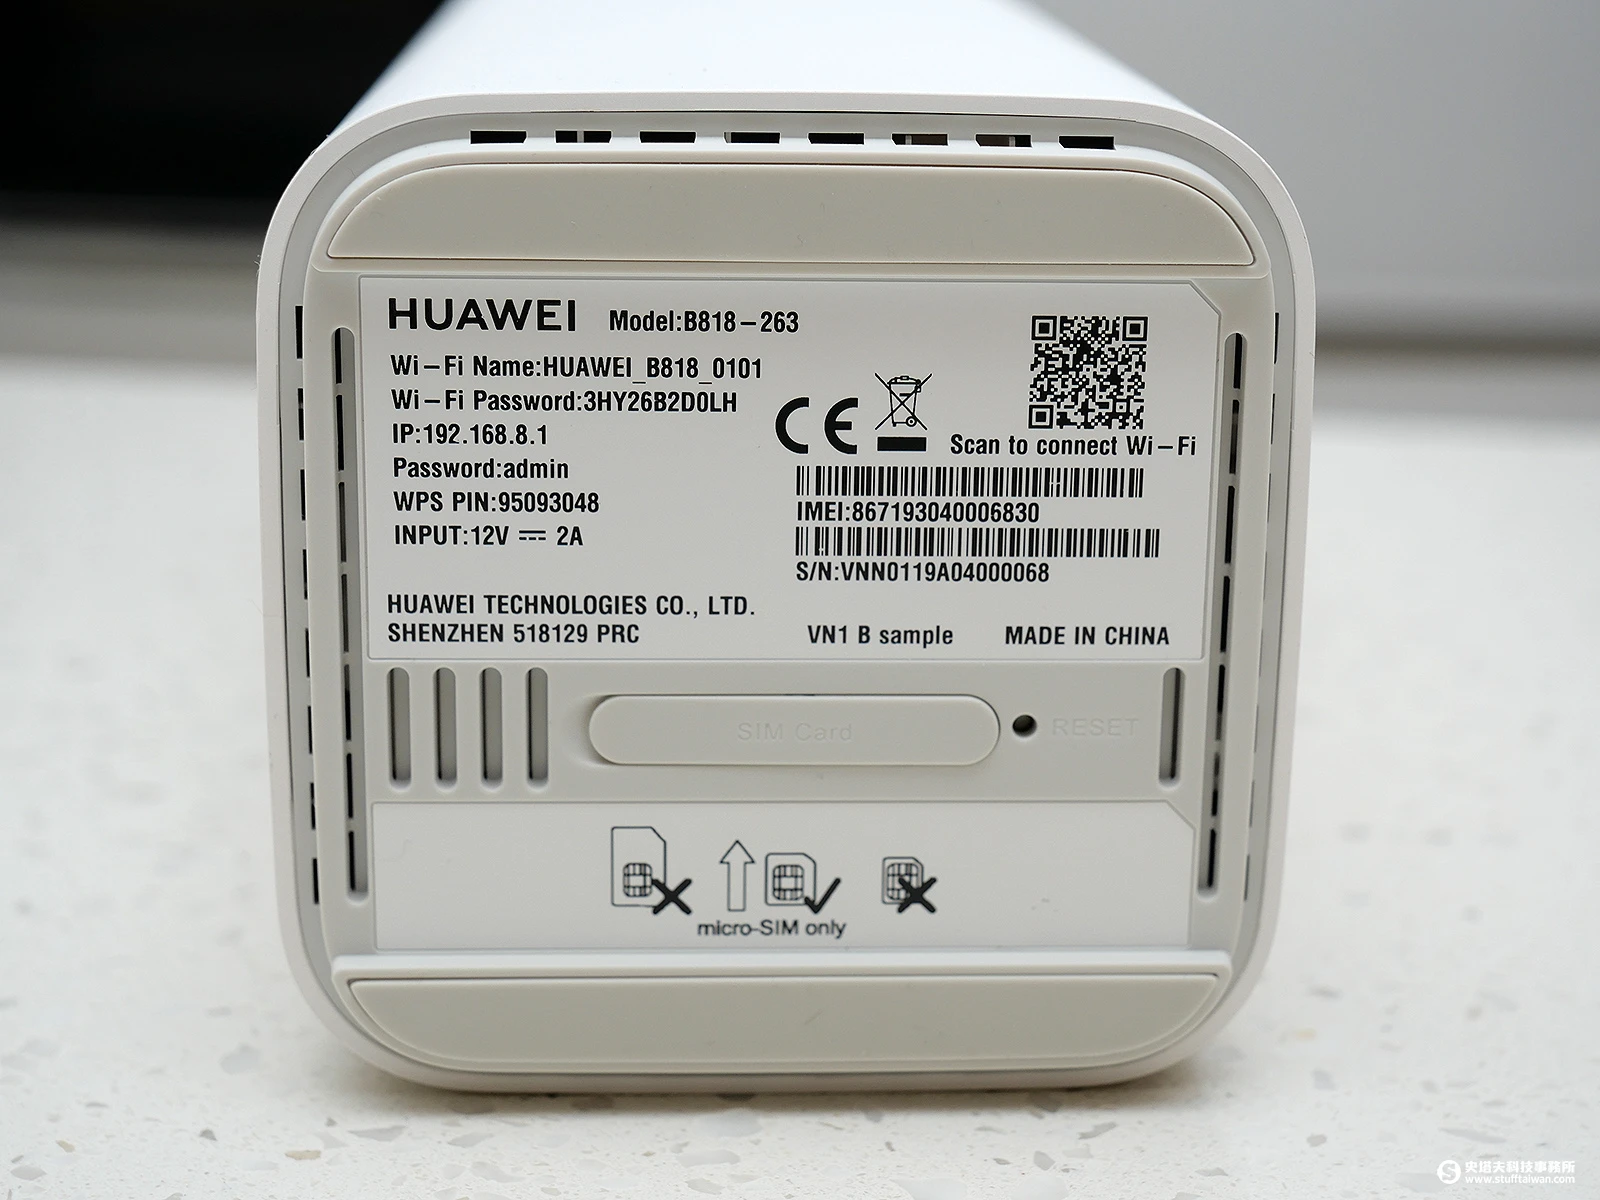 Huawei b818 263. Huawei роутер 4g b818. Wi-Fi роутер Huawei b818-263. Huawei 818-260.